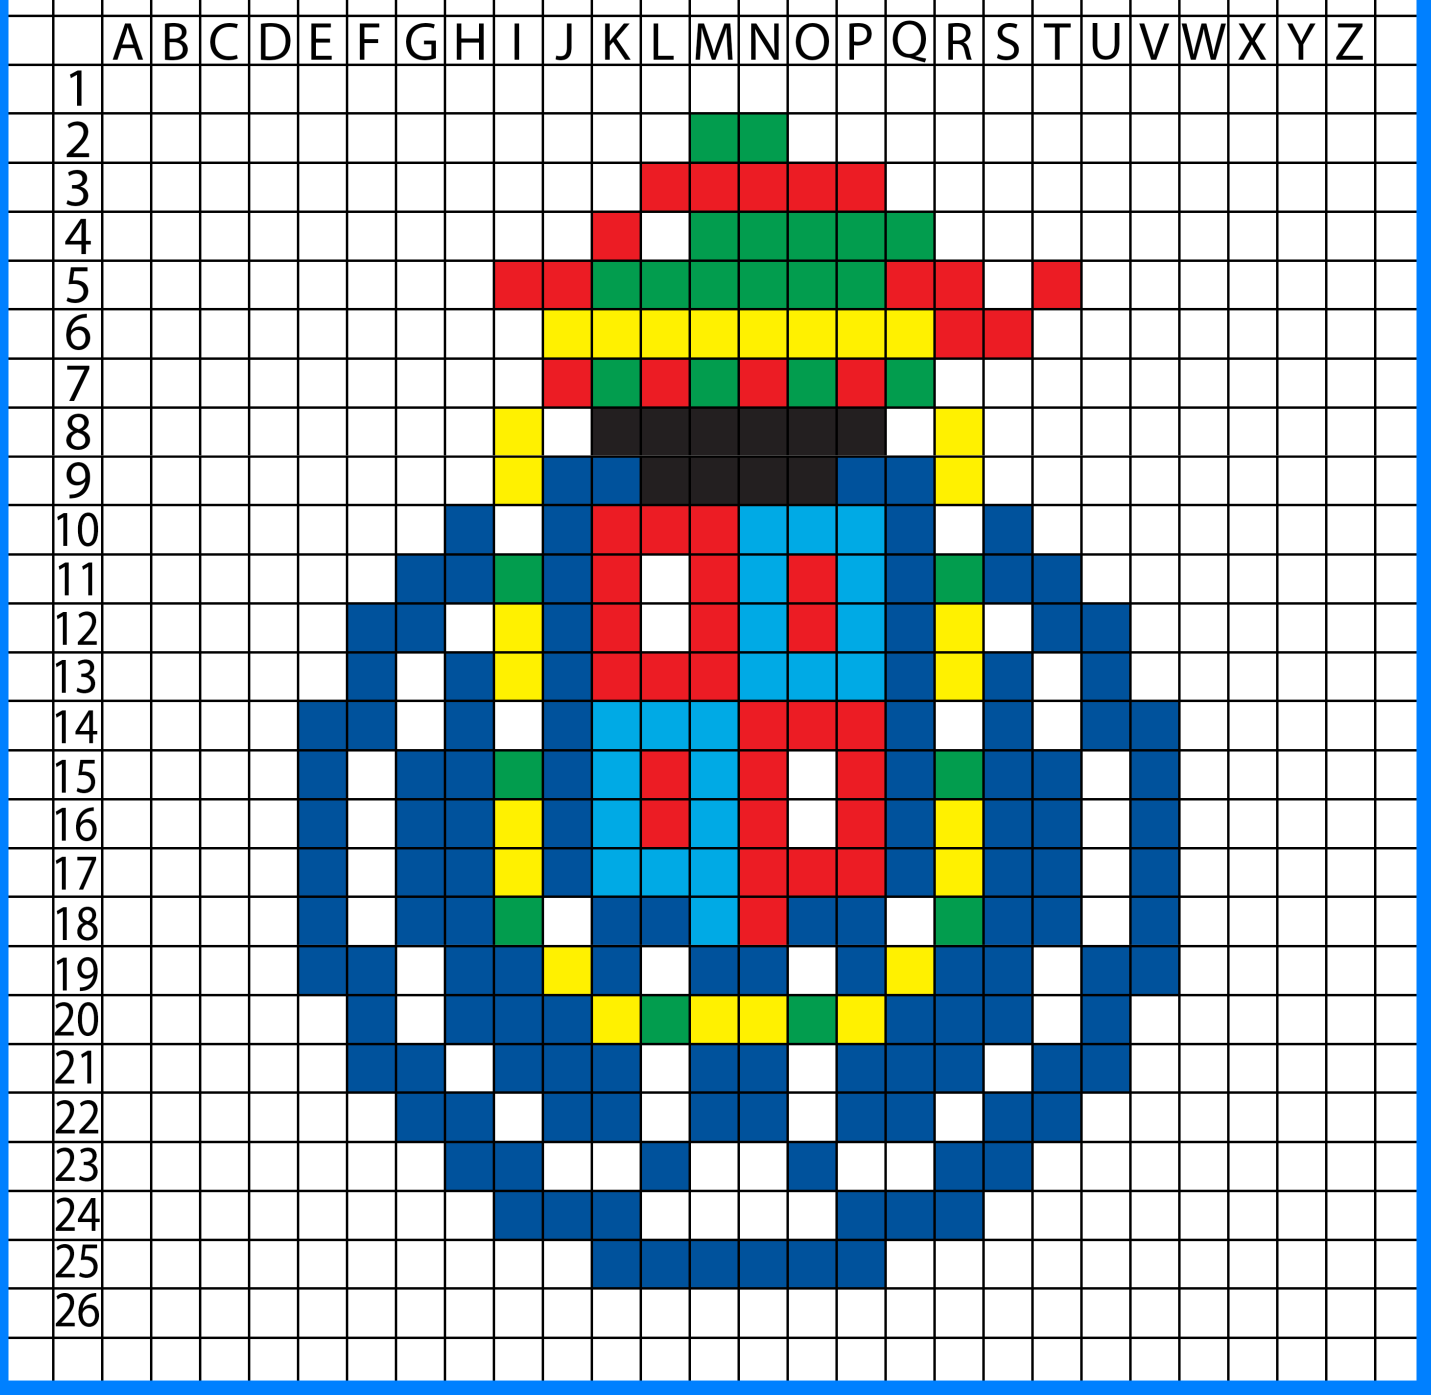 FC Porto Logo Pixel art